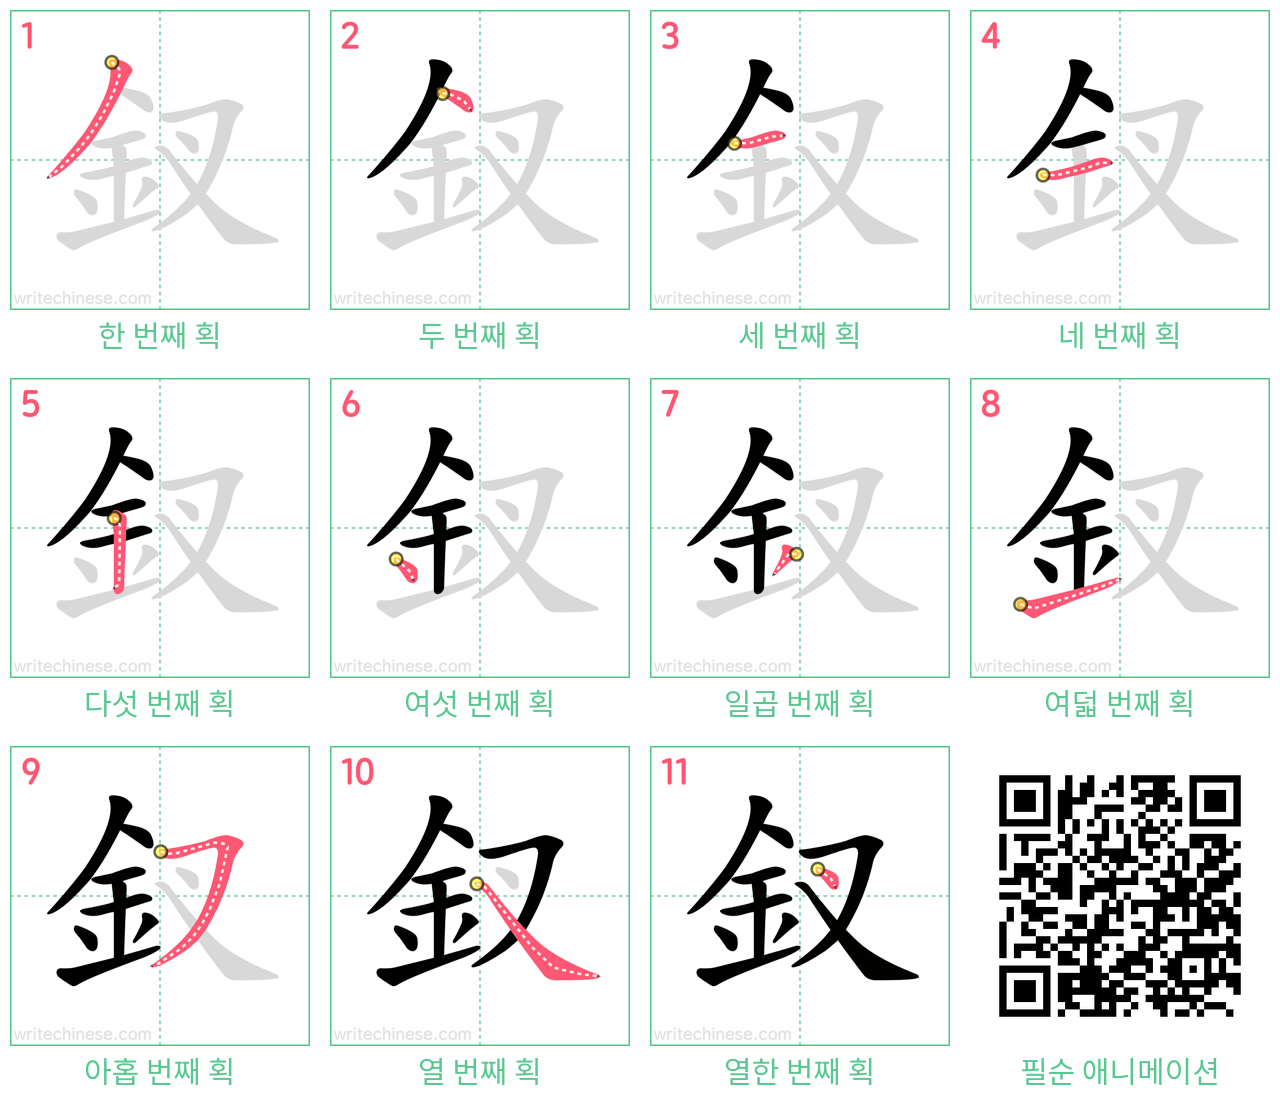 釵 step-by-step stroke order diagrams